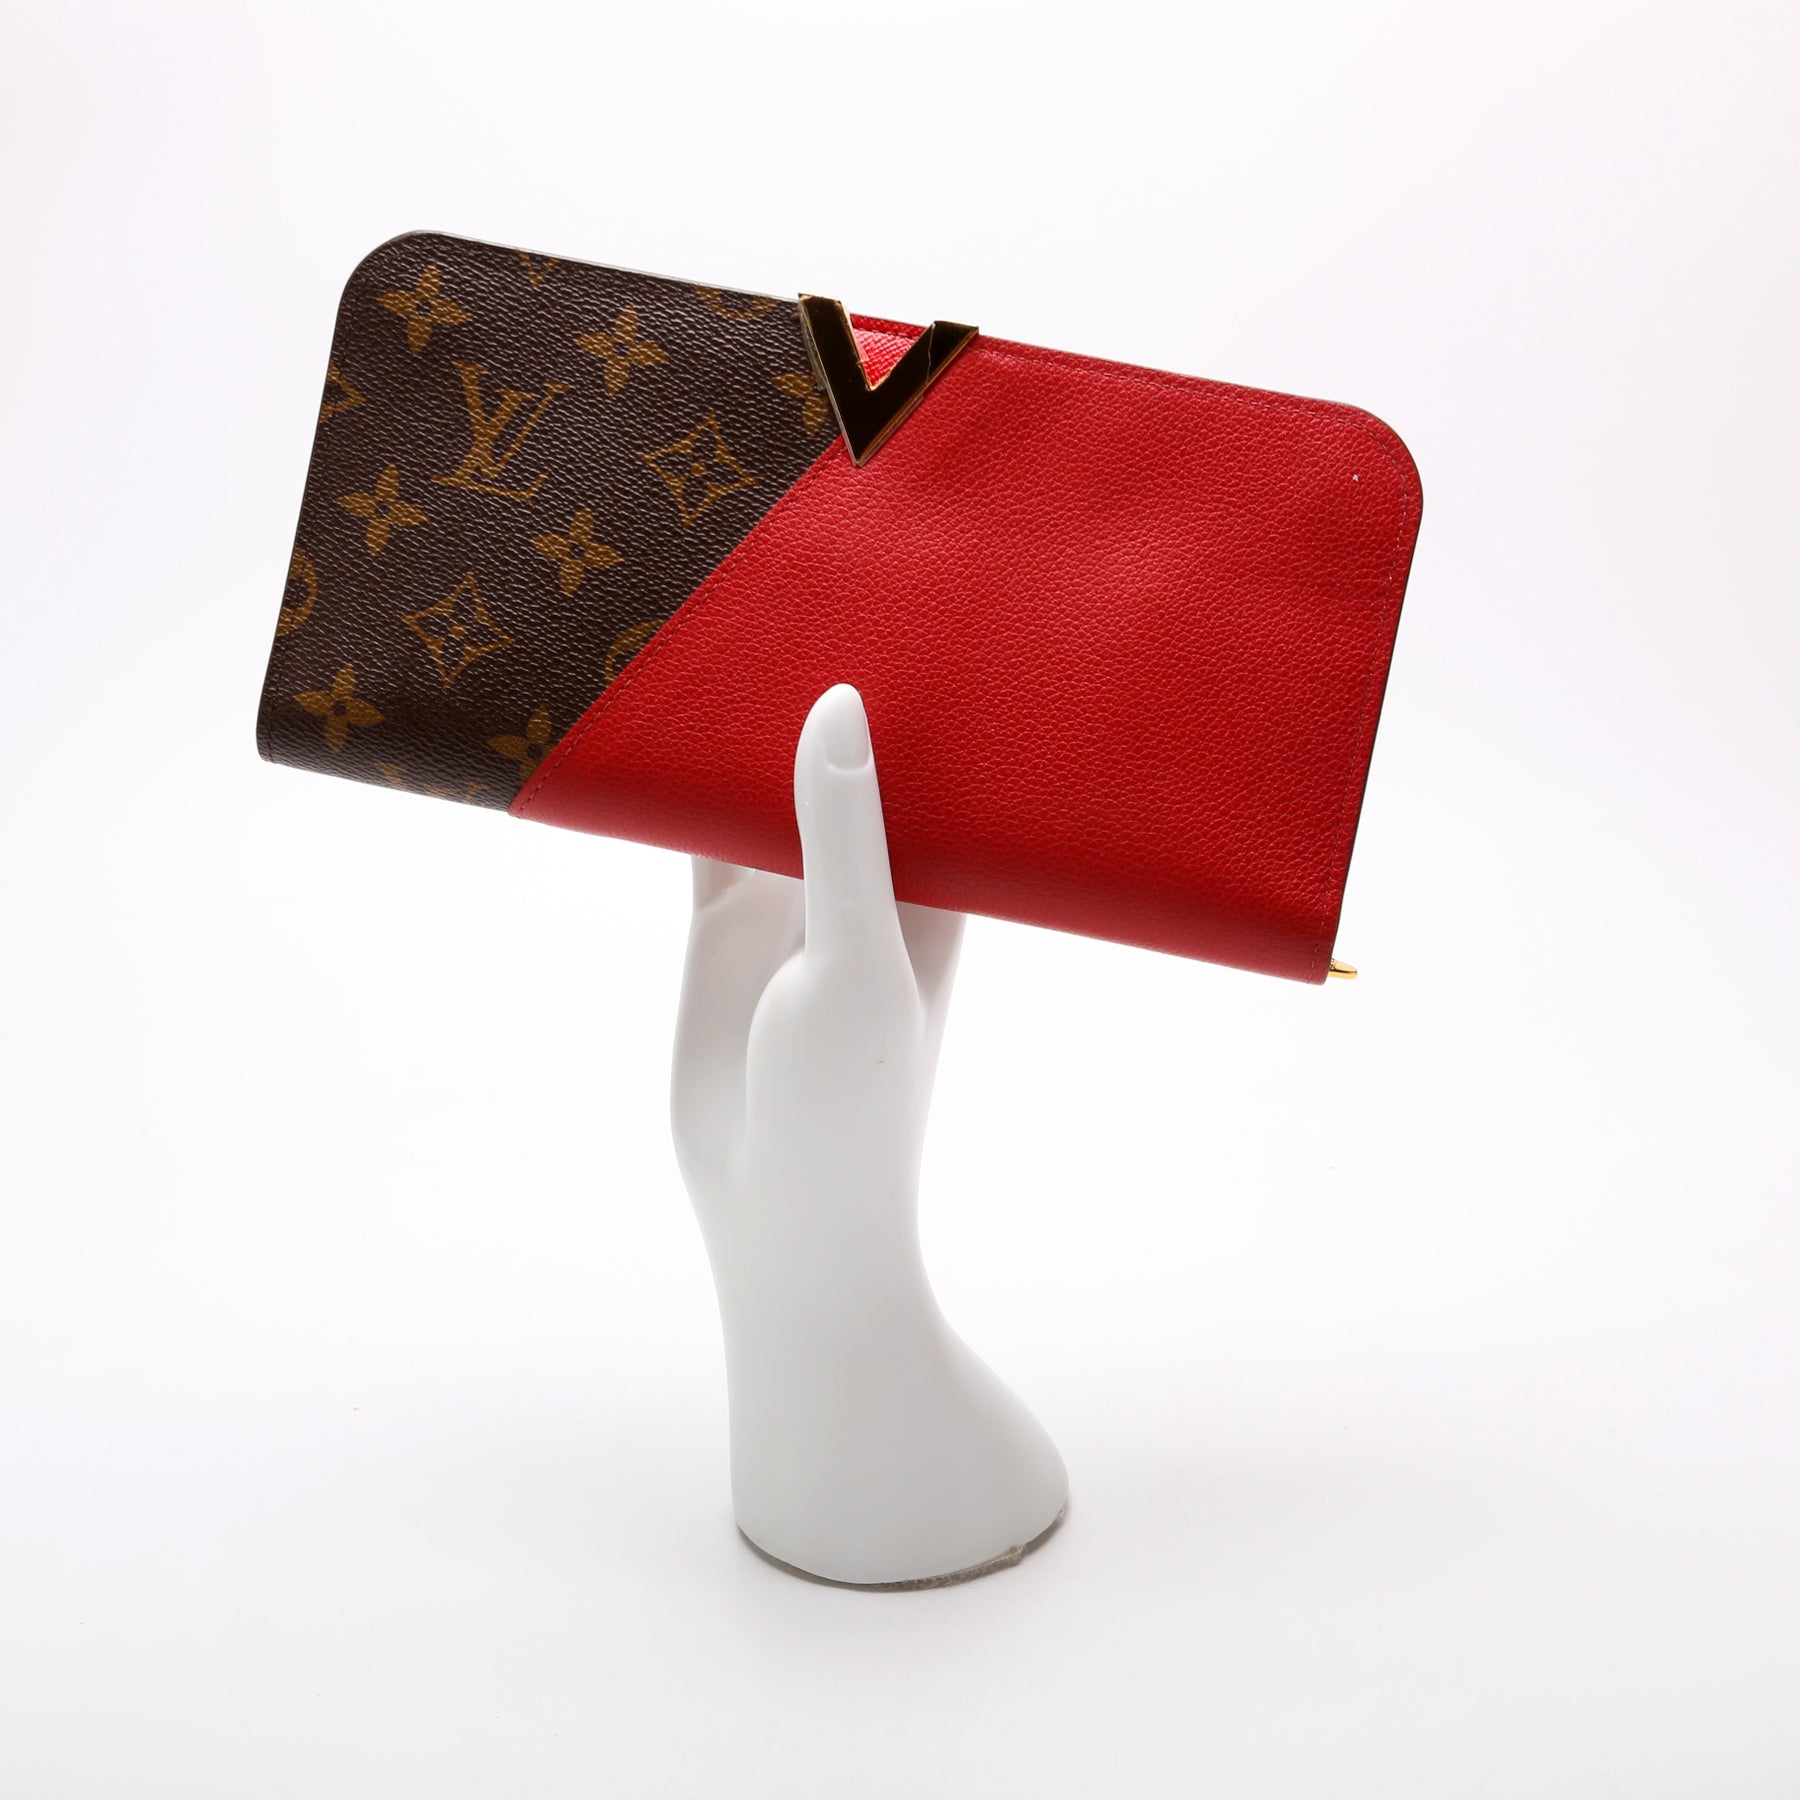 Louis Vuitton Kimono Wallet Monogram Canvas - ShopStyle